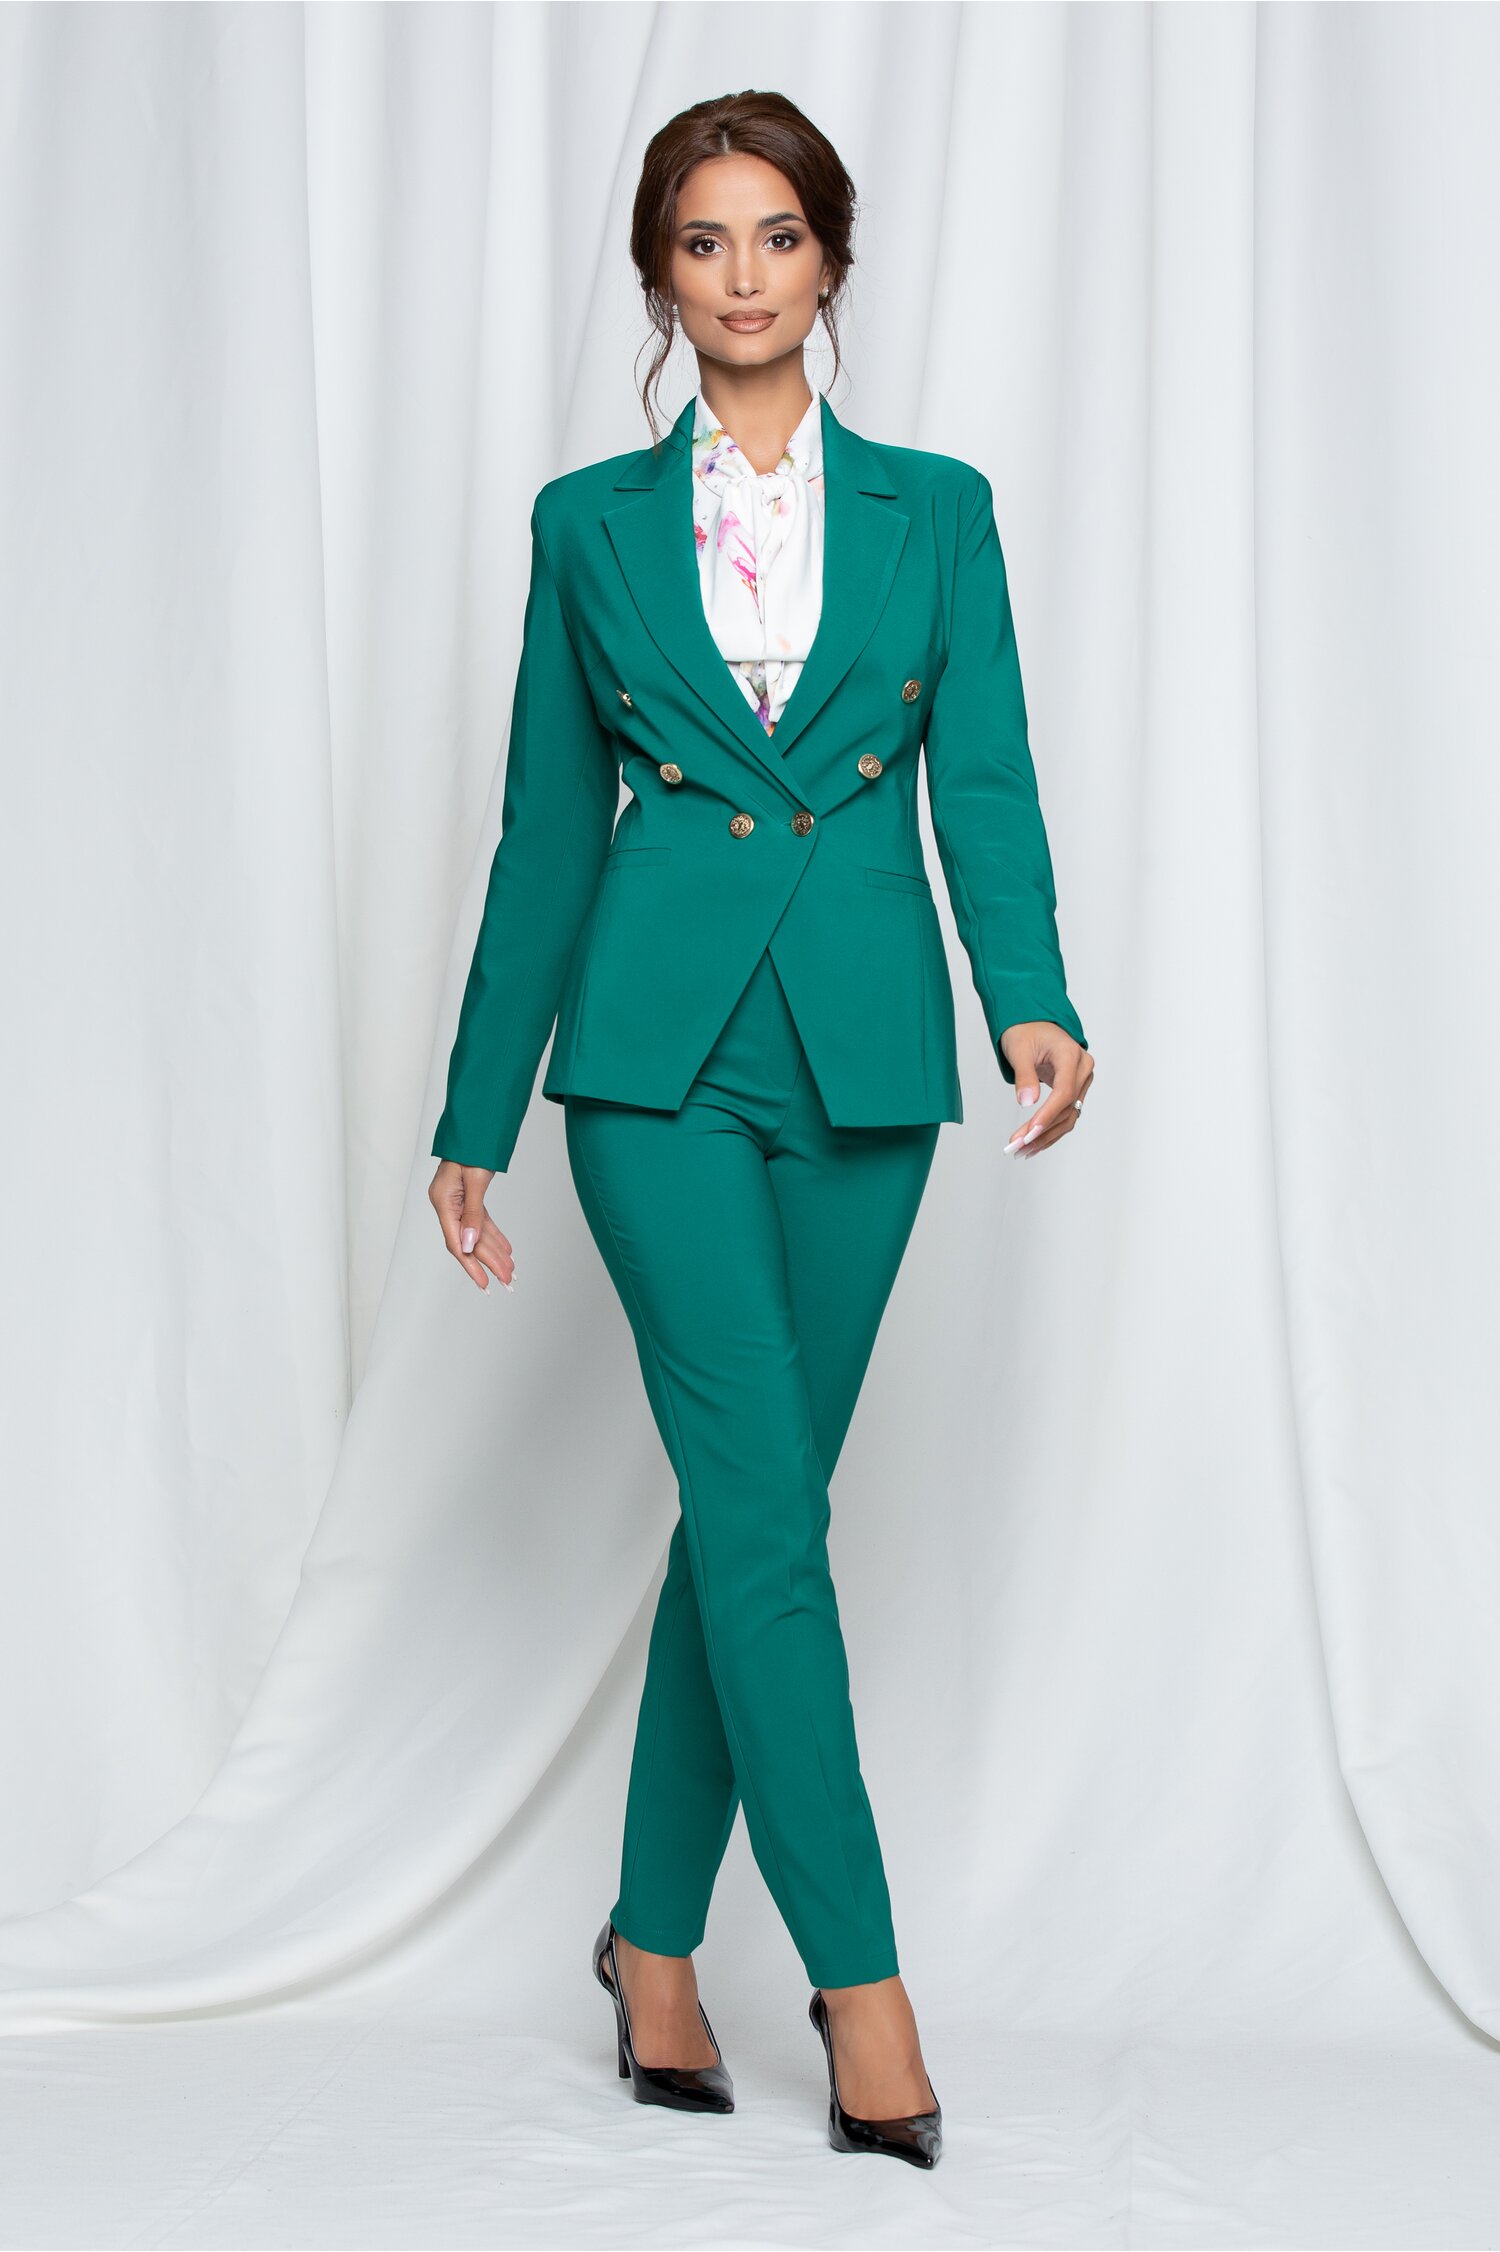 Compleu LaDonna verde cu nasturi aurii pe sacou si pantaloni dyfashion.ro imagine 2022 13clothing.ro